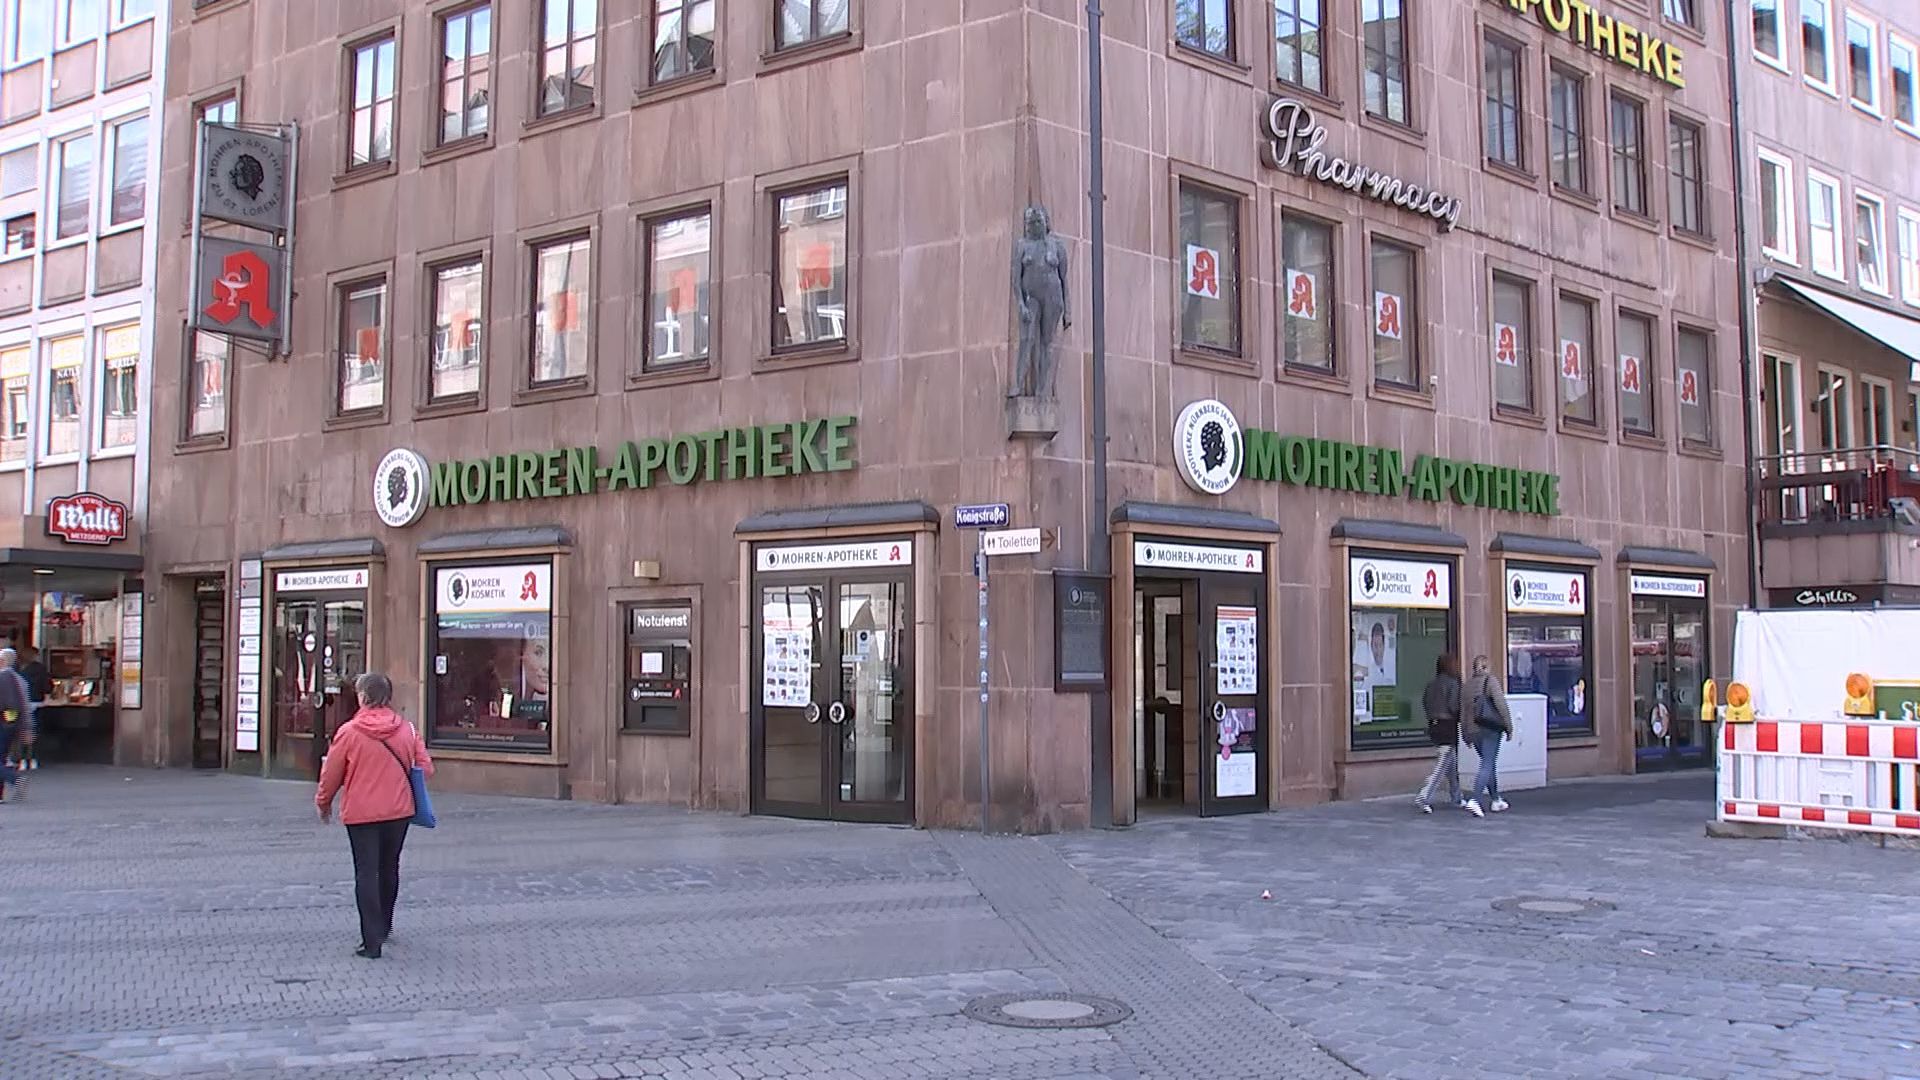 Nach 582 Jahren: Älteste Apotheke schließt in Nürnberg